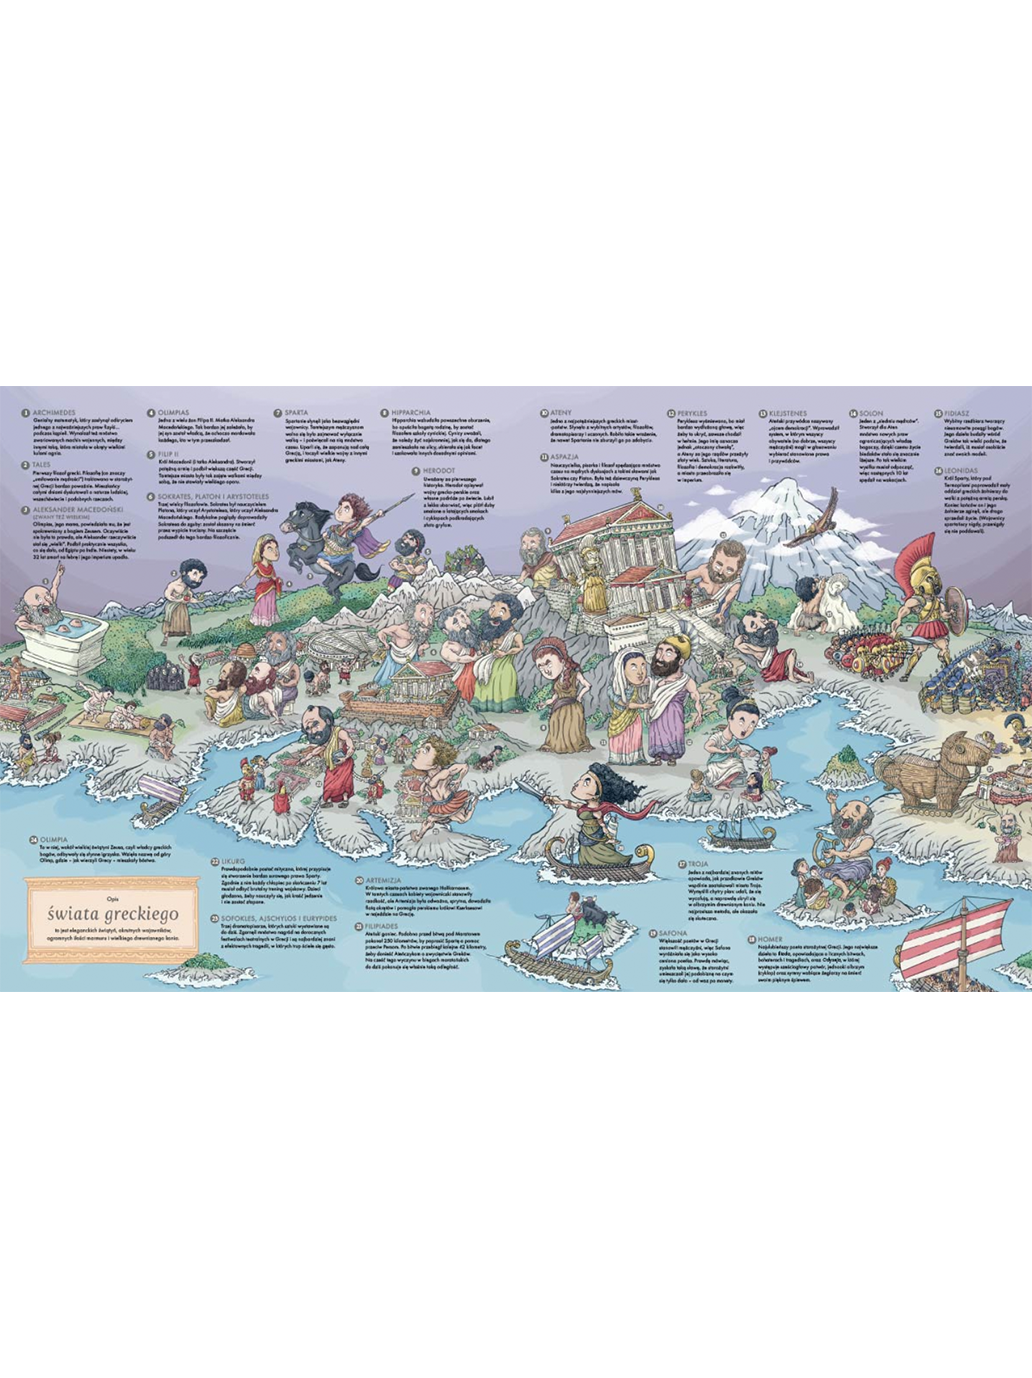 Atlas histórico